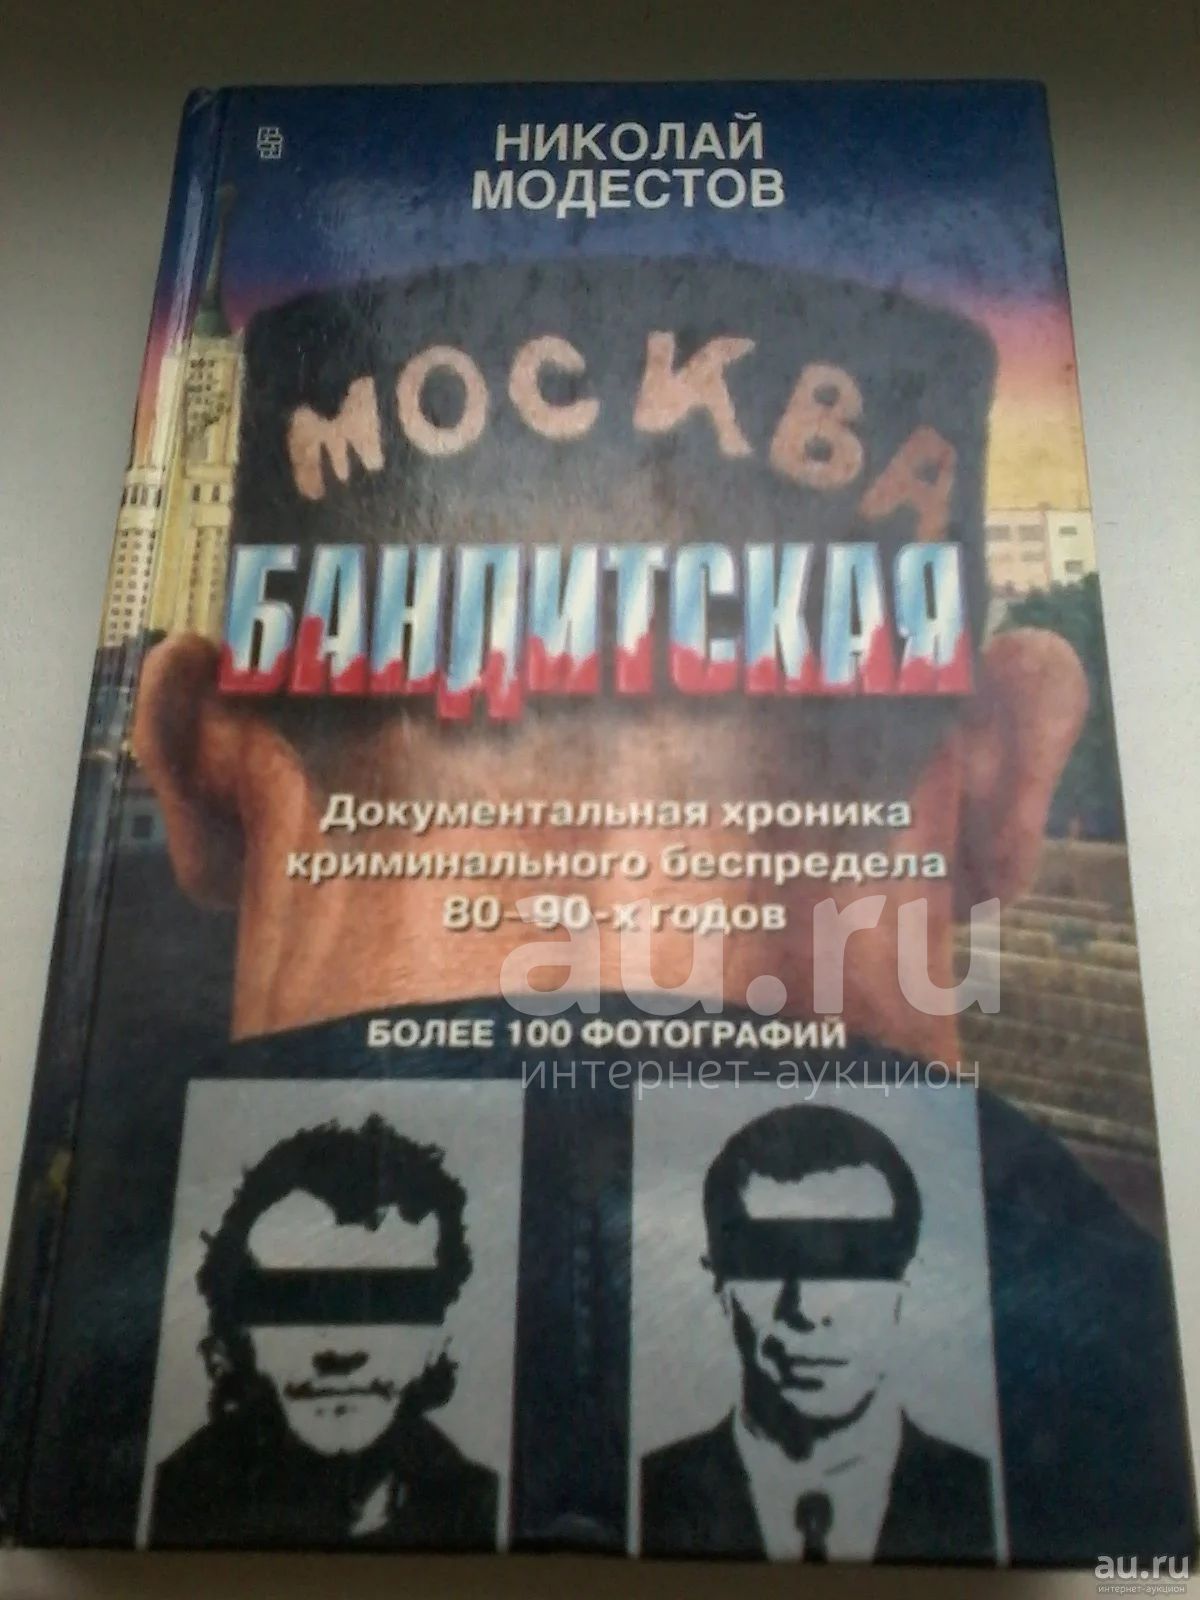 Читать романы про бандитов. Москва бандитская книга. Москва бандитская 1-2 книга. Москва бандитская книга читать.